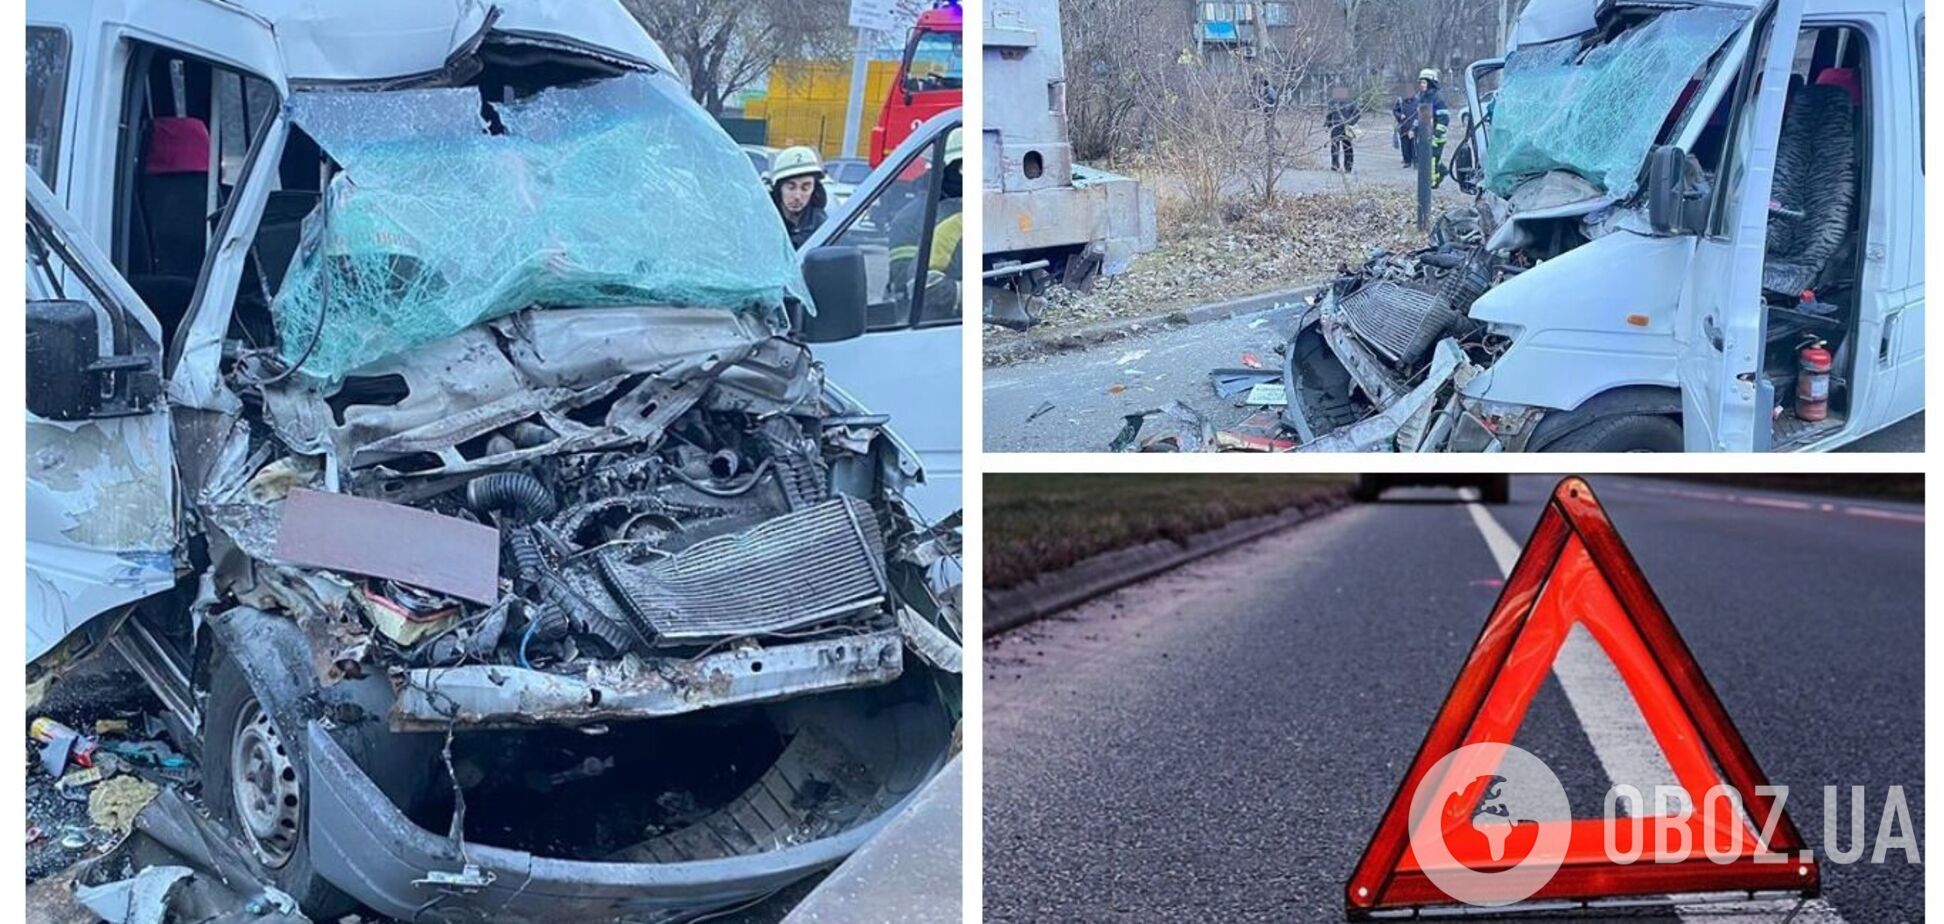 В Запорожье маршрутка с пассажирами влетела в грузовик, пострадали шесть человек. Фото